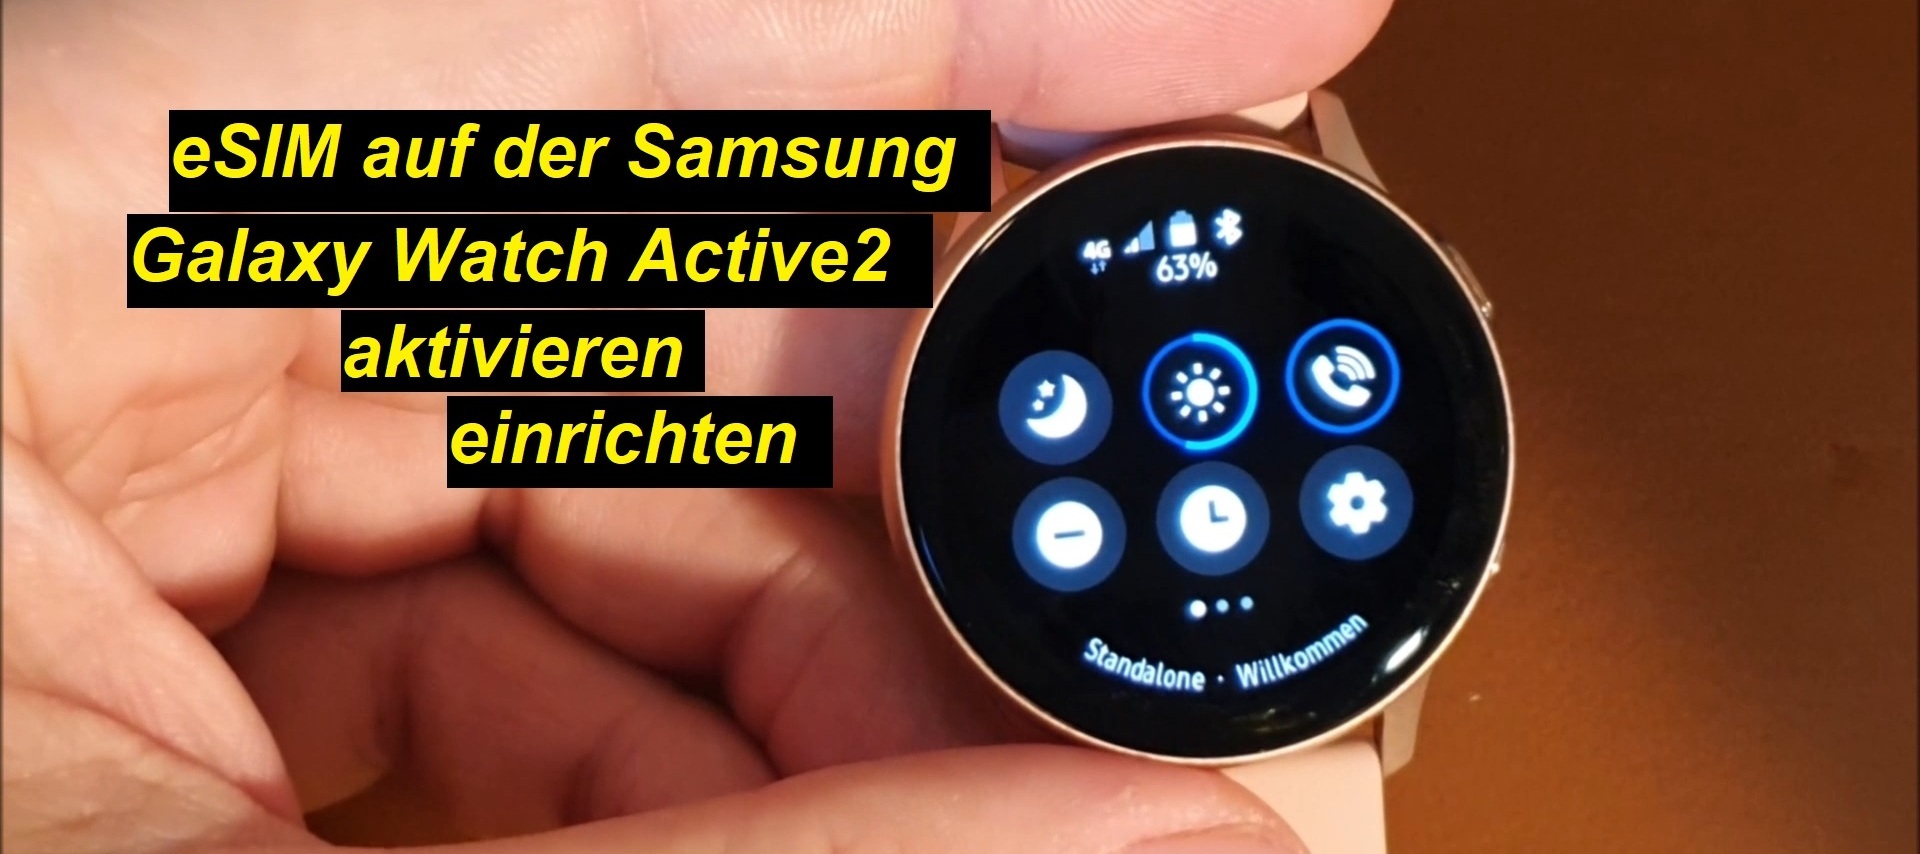 eSIM auf Samsung Galaxy Watch Active2 LTE aktivieren und einrichten (o2)